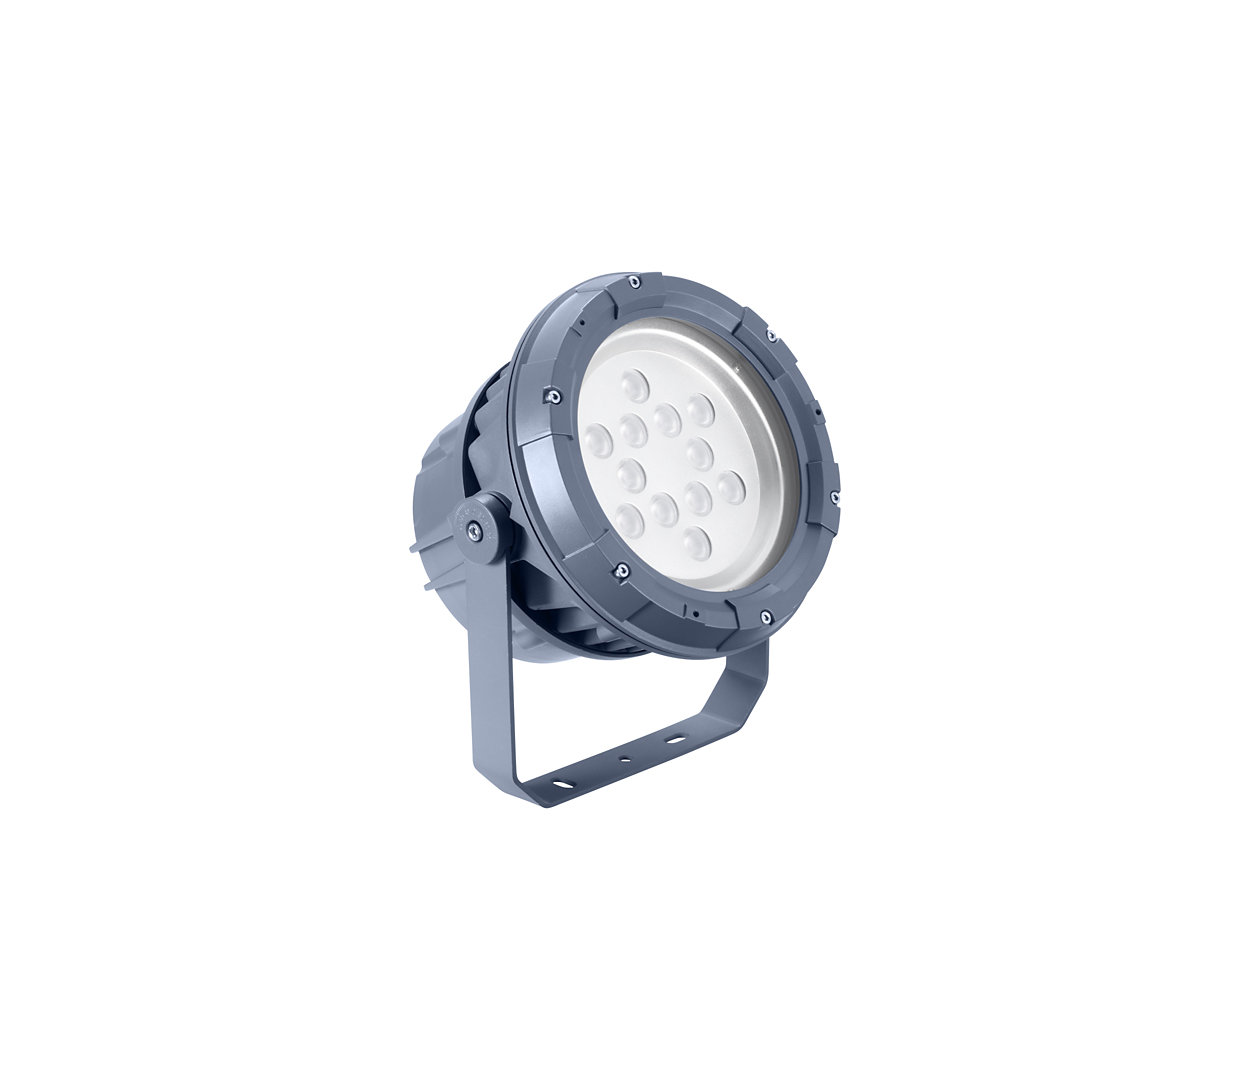 Arkitektonisk LED-strålkastare för fast eller dynamisk belysning.